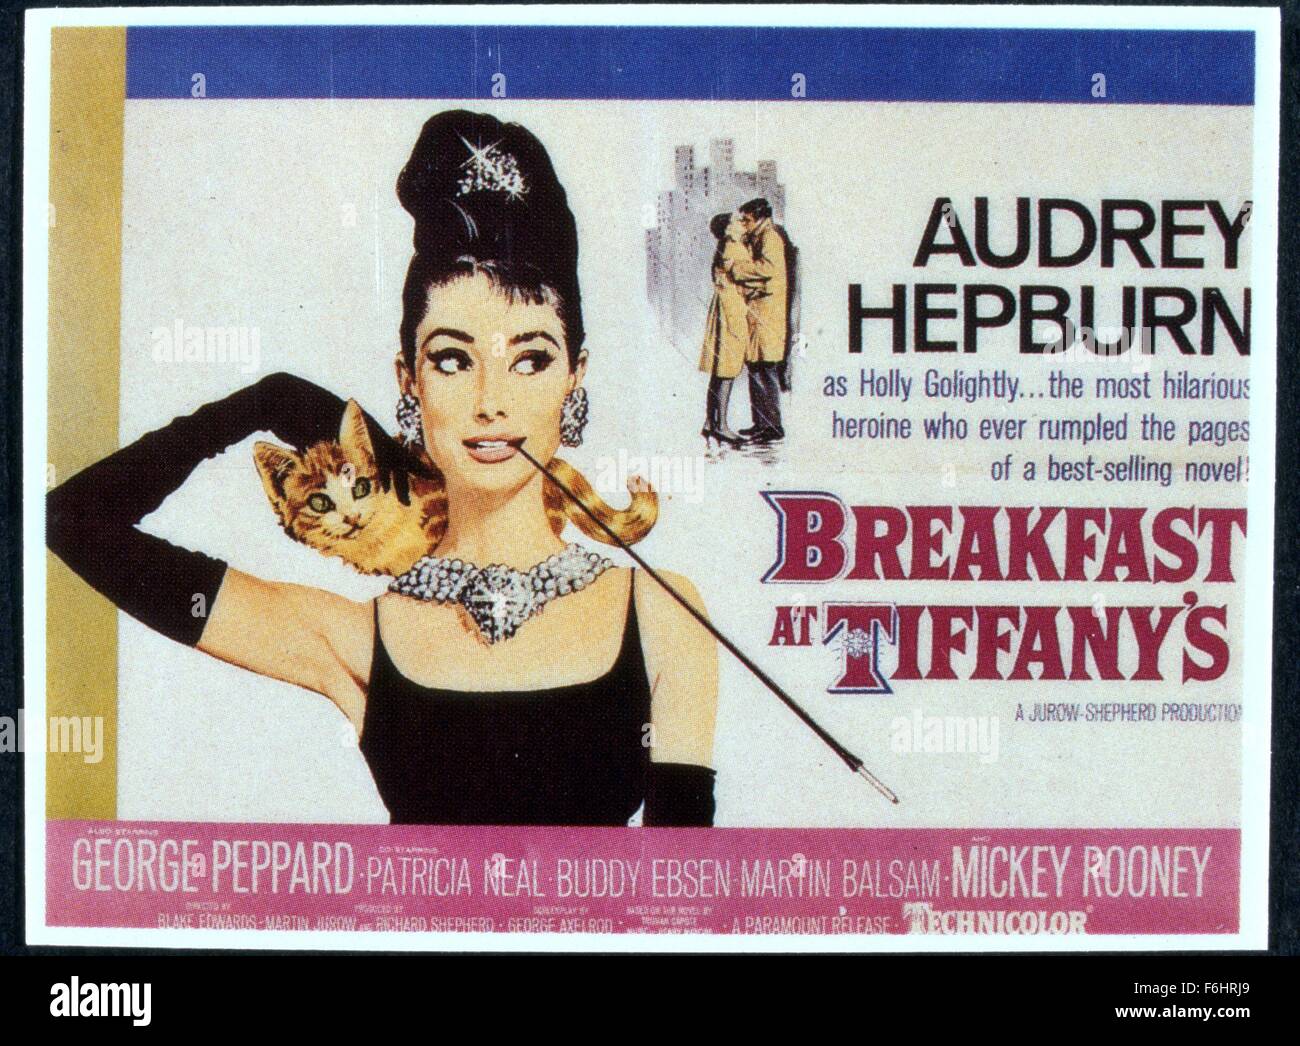 1961, le titre du film : Breakfast at Tiffany's, Directeur : BLAKE EDWARDS, Studio : Paramount, Photo : Audrey Hepburn, l'affiche, le titre, CARTE, diamants, bijoux de riches, complexes, tabagisme, porte-cigarette, des gants. (Crédit Image : SNAP) Banque D'Images